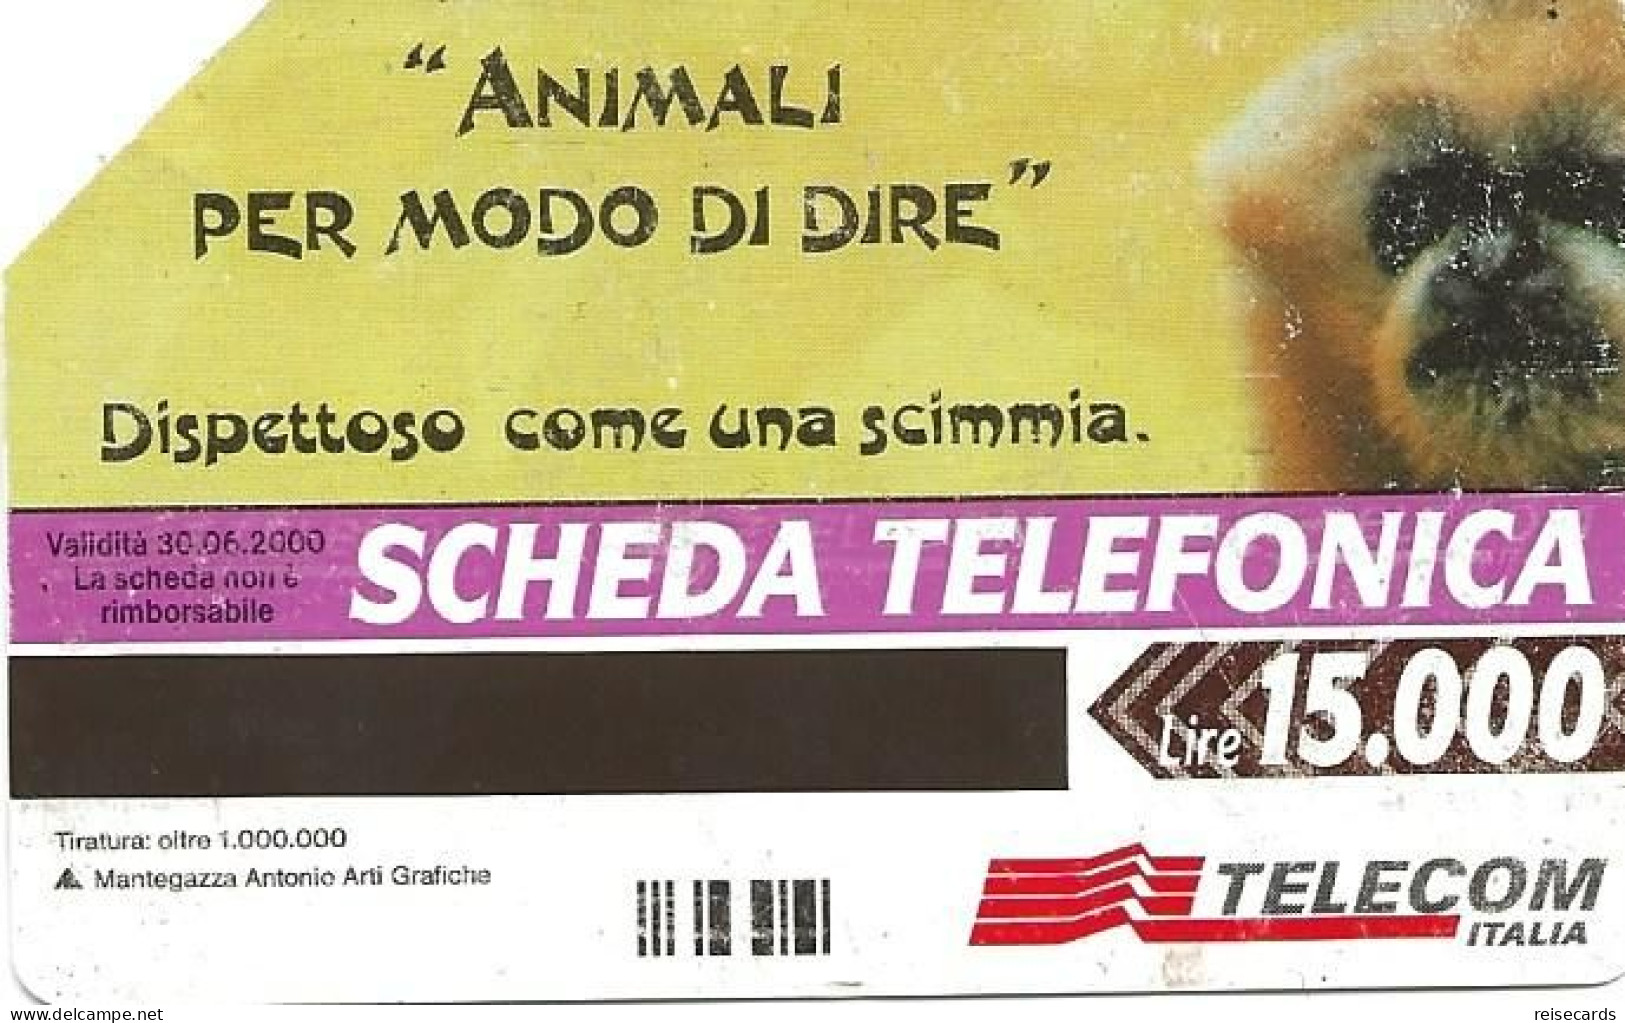 Italy: Telecom Italia - Animali Per Modo Di Dire - Públicas  Publicitarias